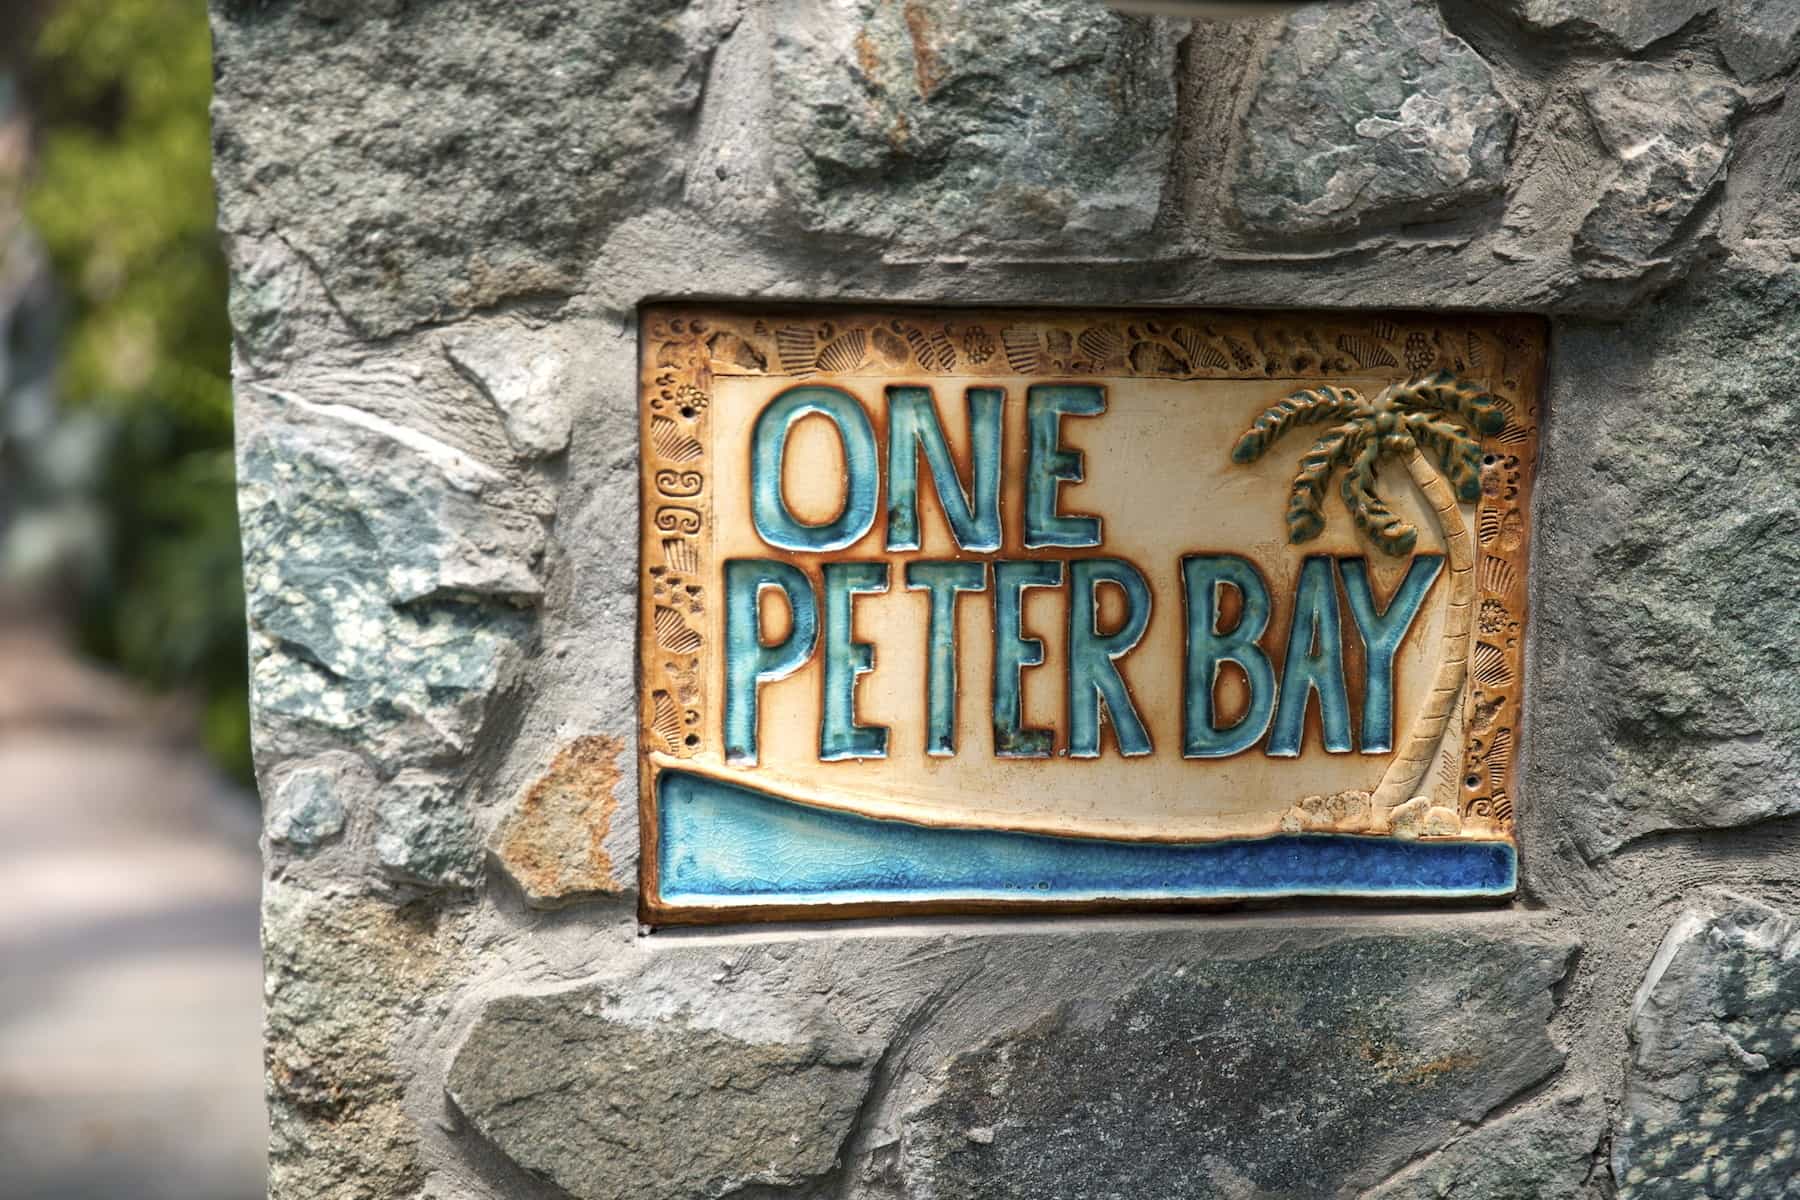 1-peter-bay 22